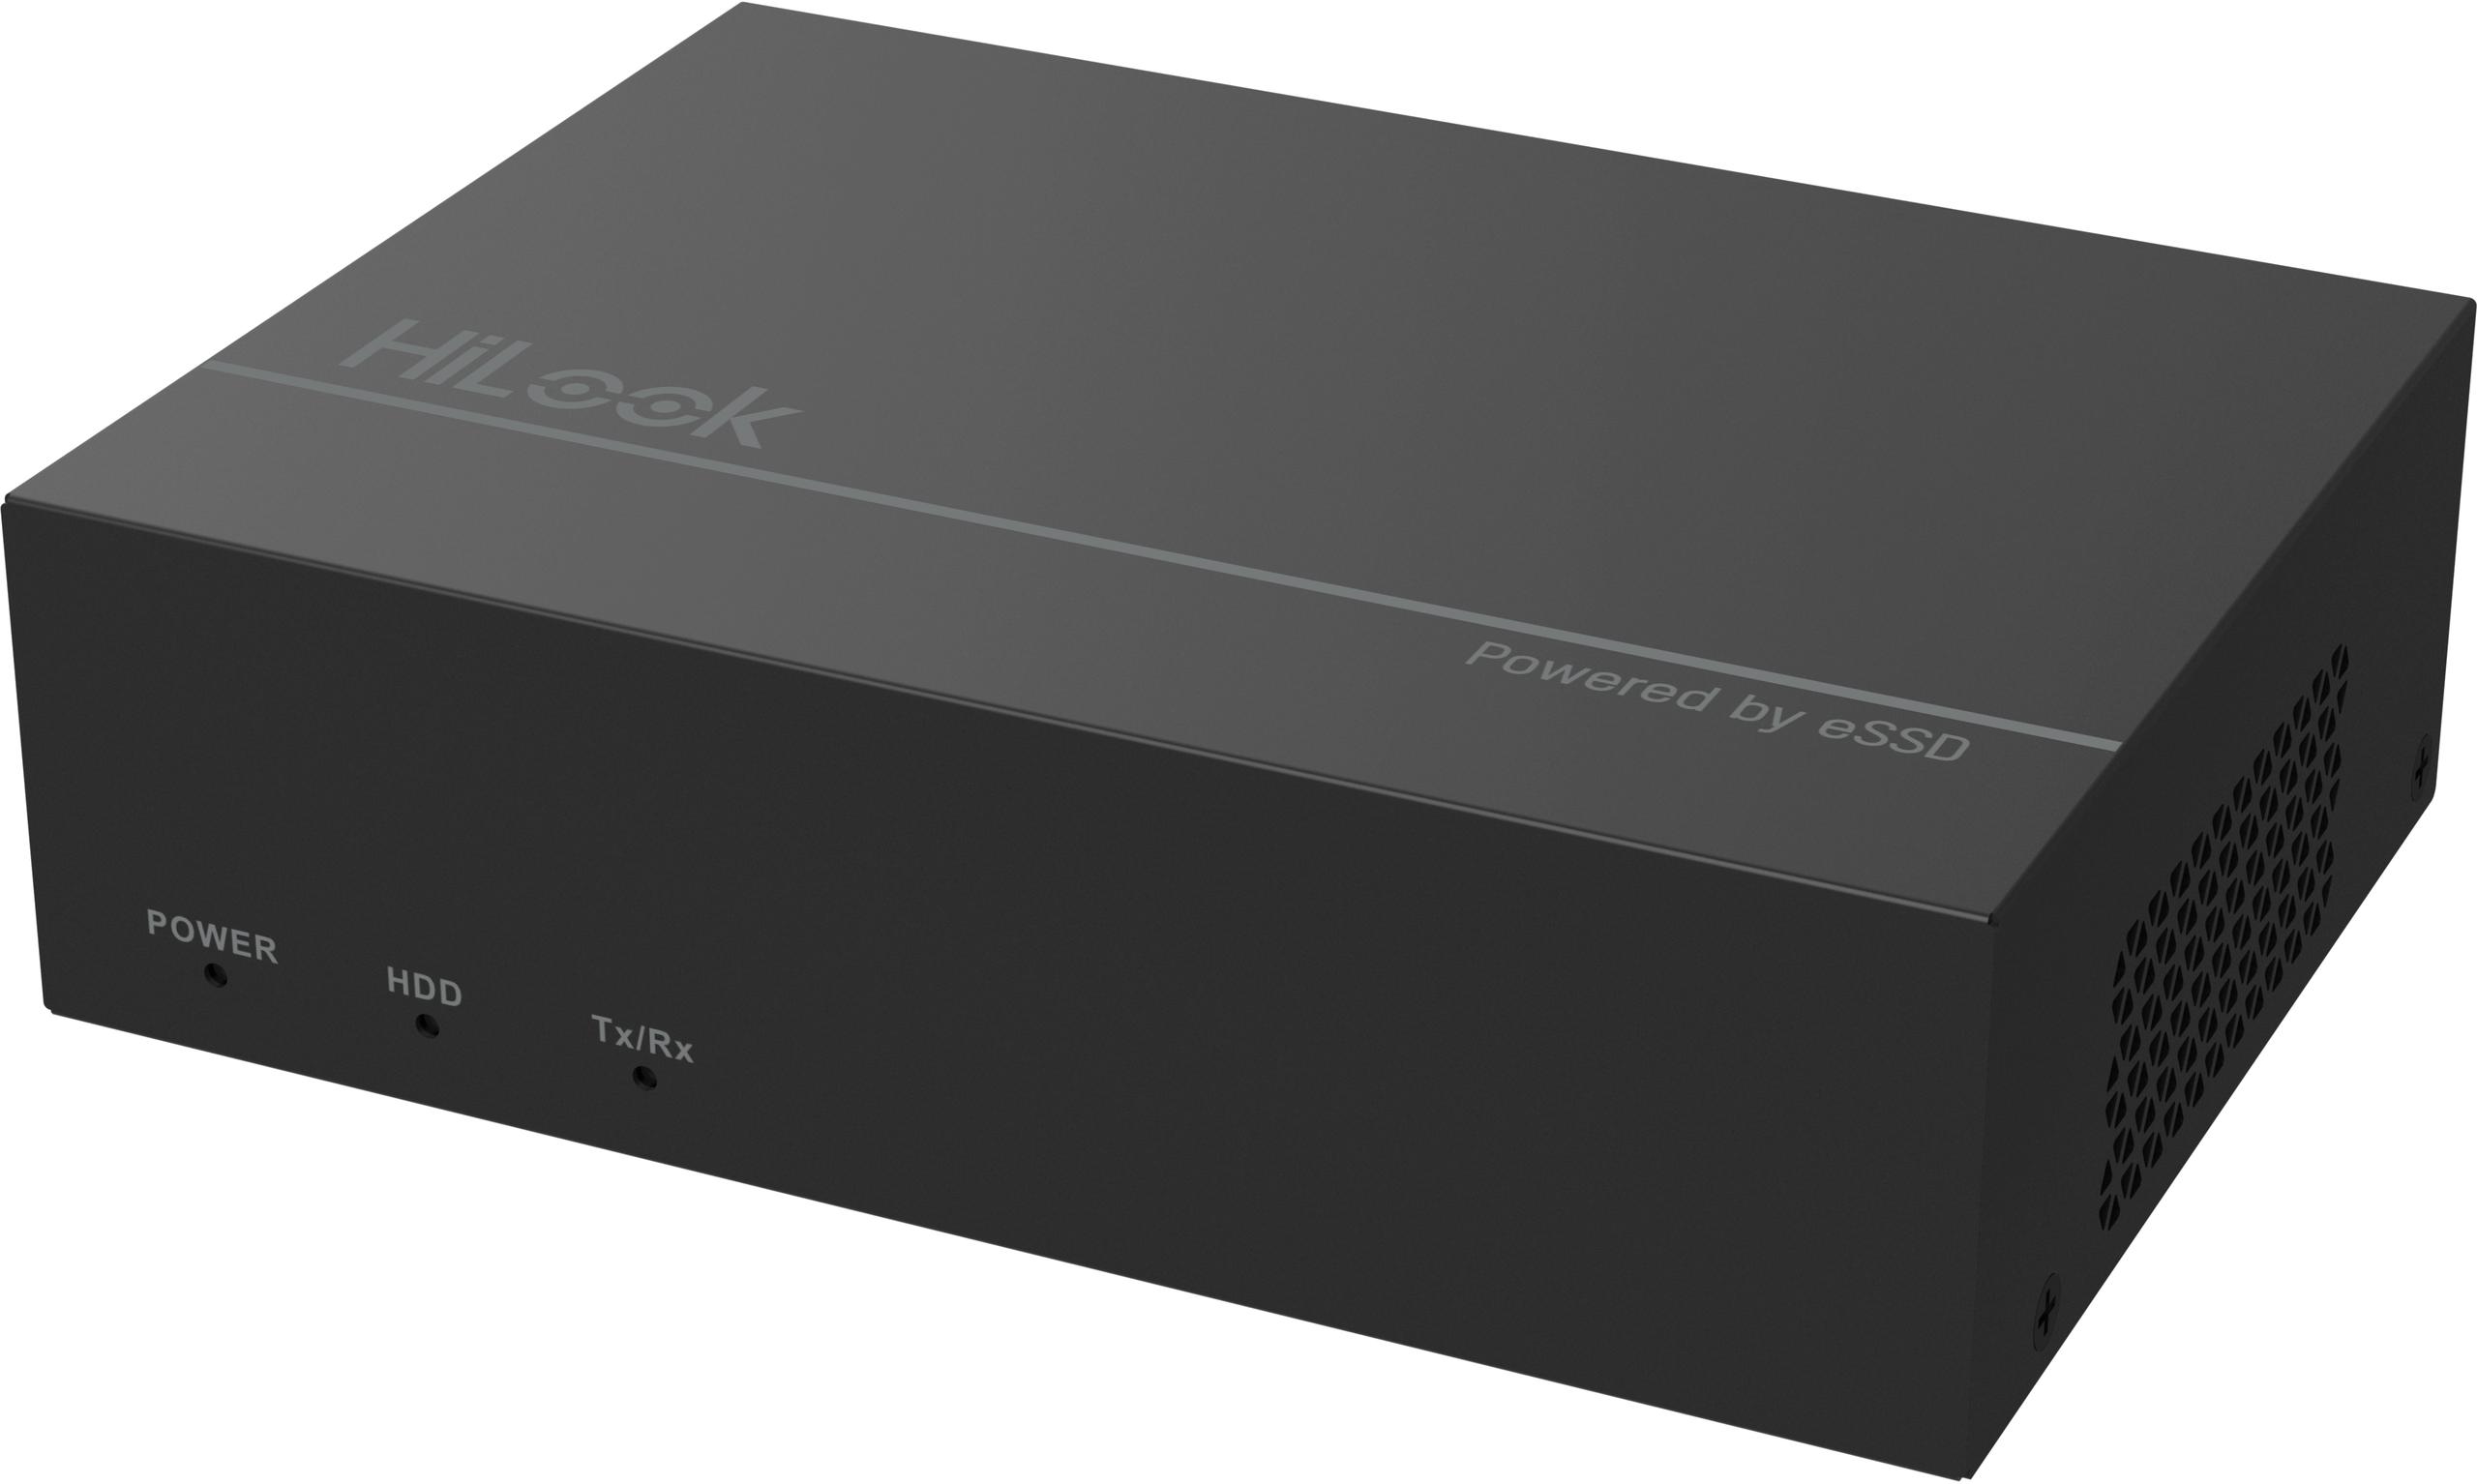 Rejestrator 4w1 Hilook by Hikvision 4 kanałowy 2MPx SSD-DVR-2MP - poznaj pełnię jego funkcjonalności: